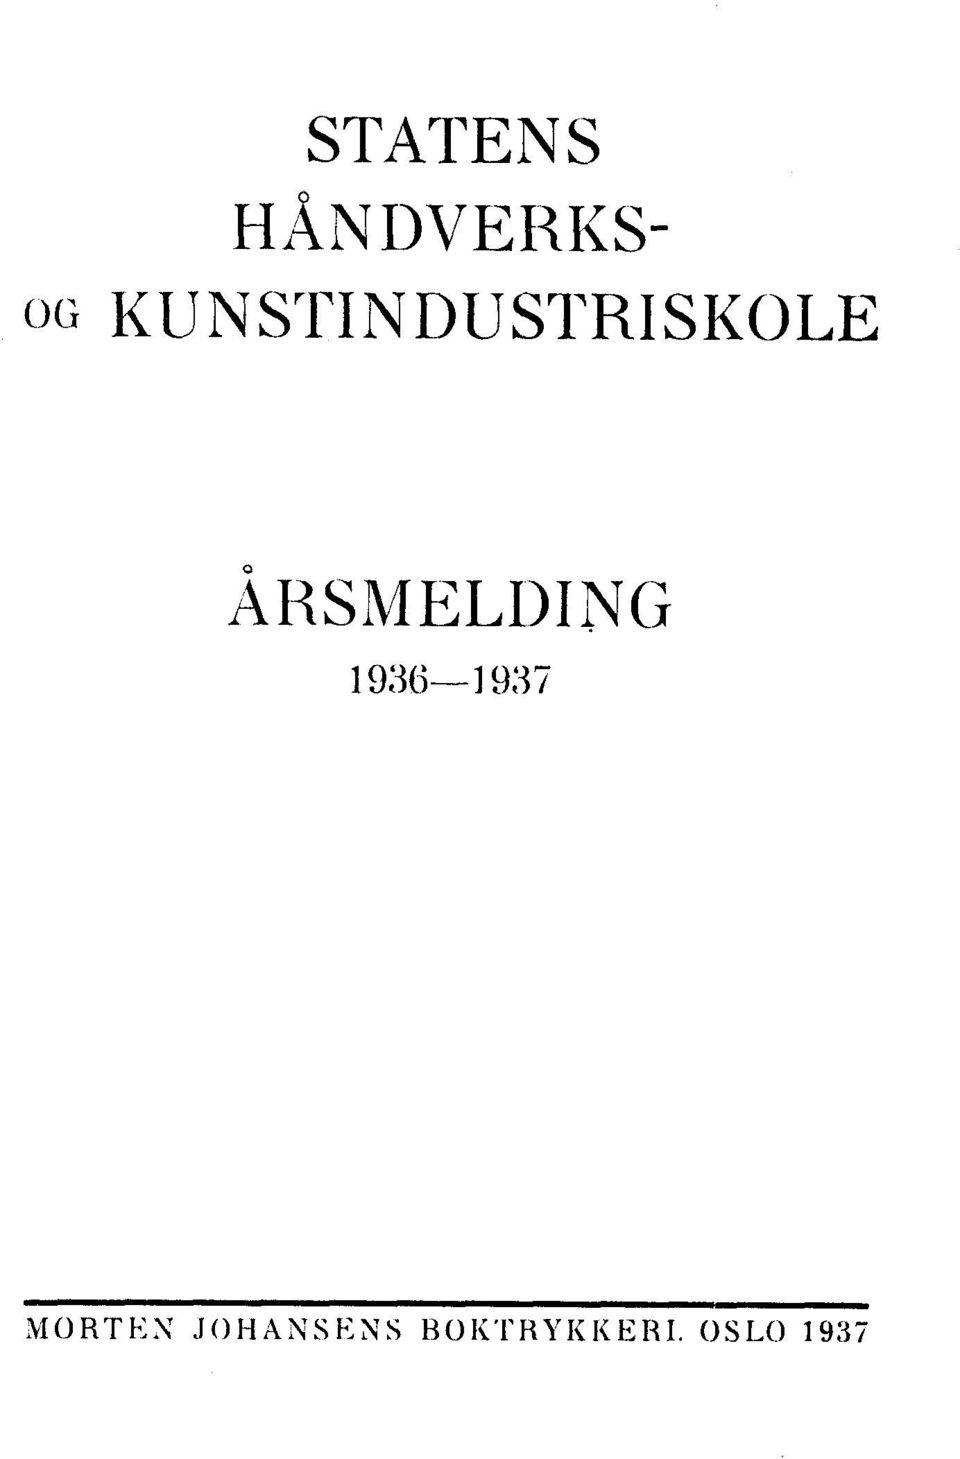 ÅRSMELDING 1936-1937